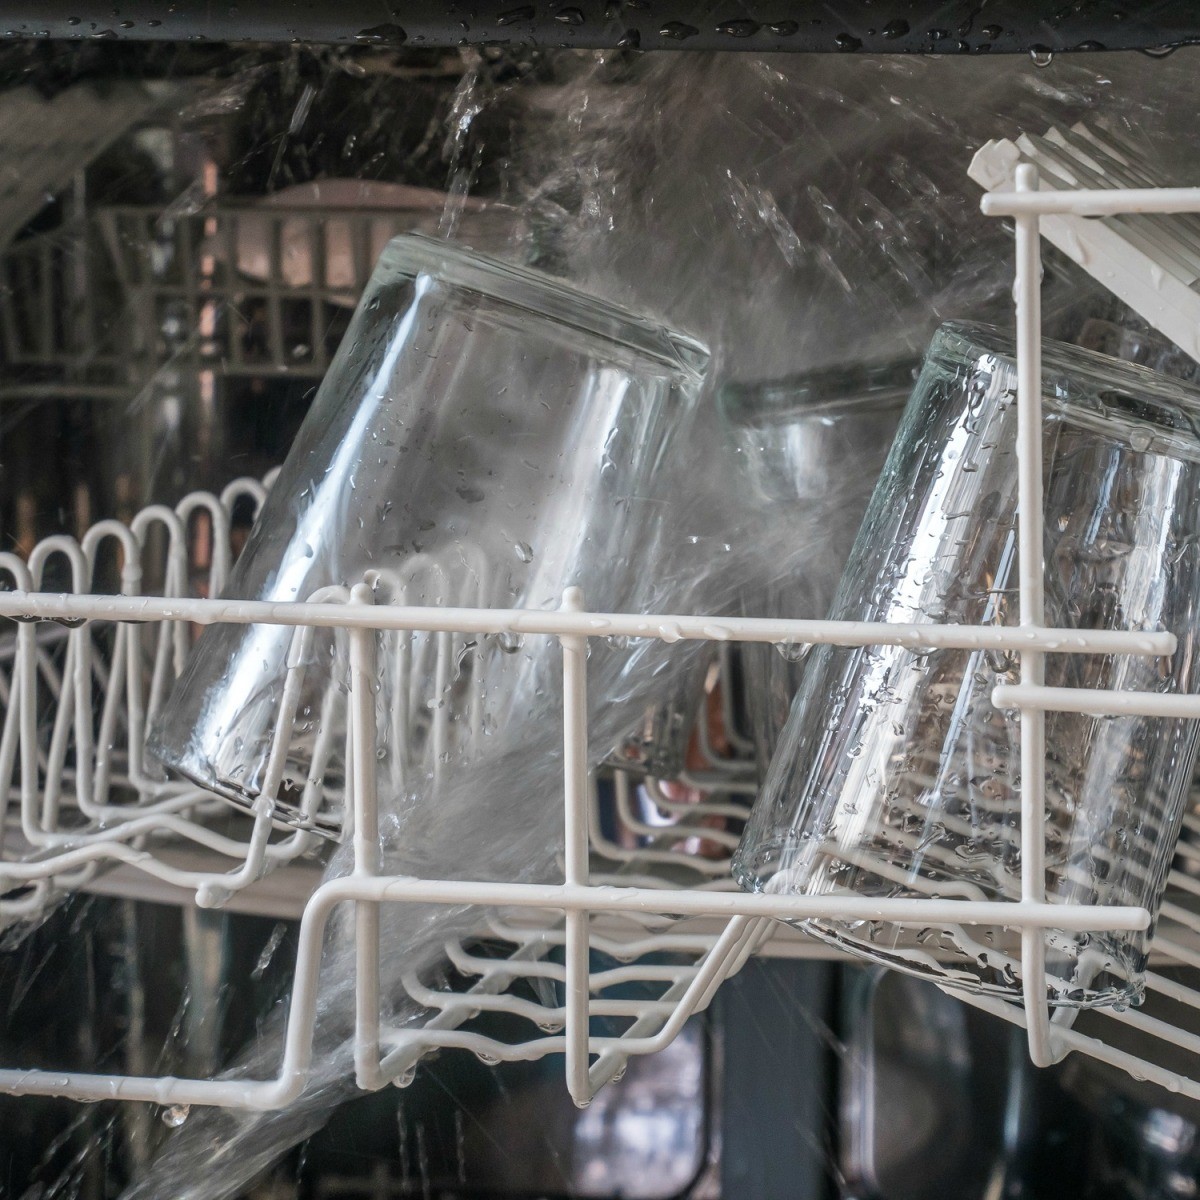 Dishwashing Detergent That Won't Etch Glass?